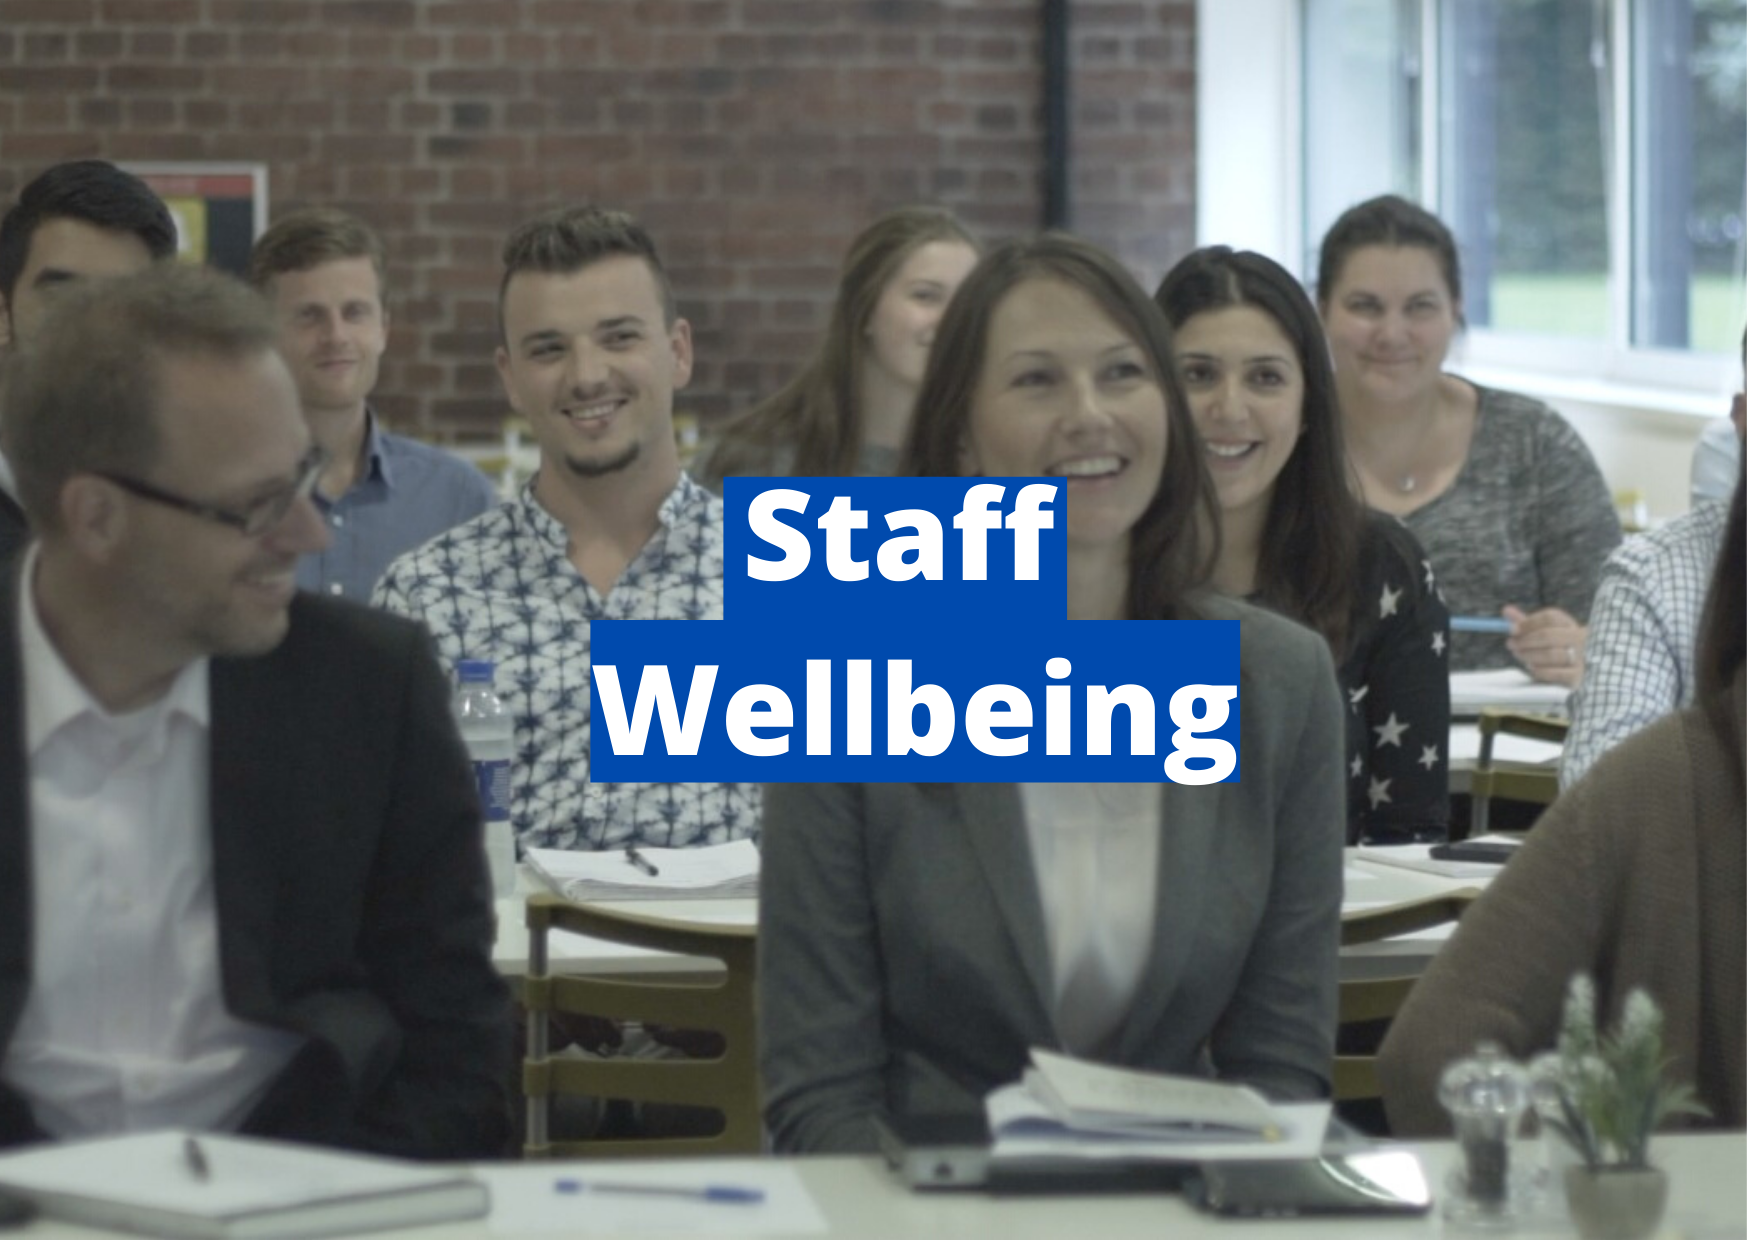 Staff wellbeing